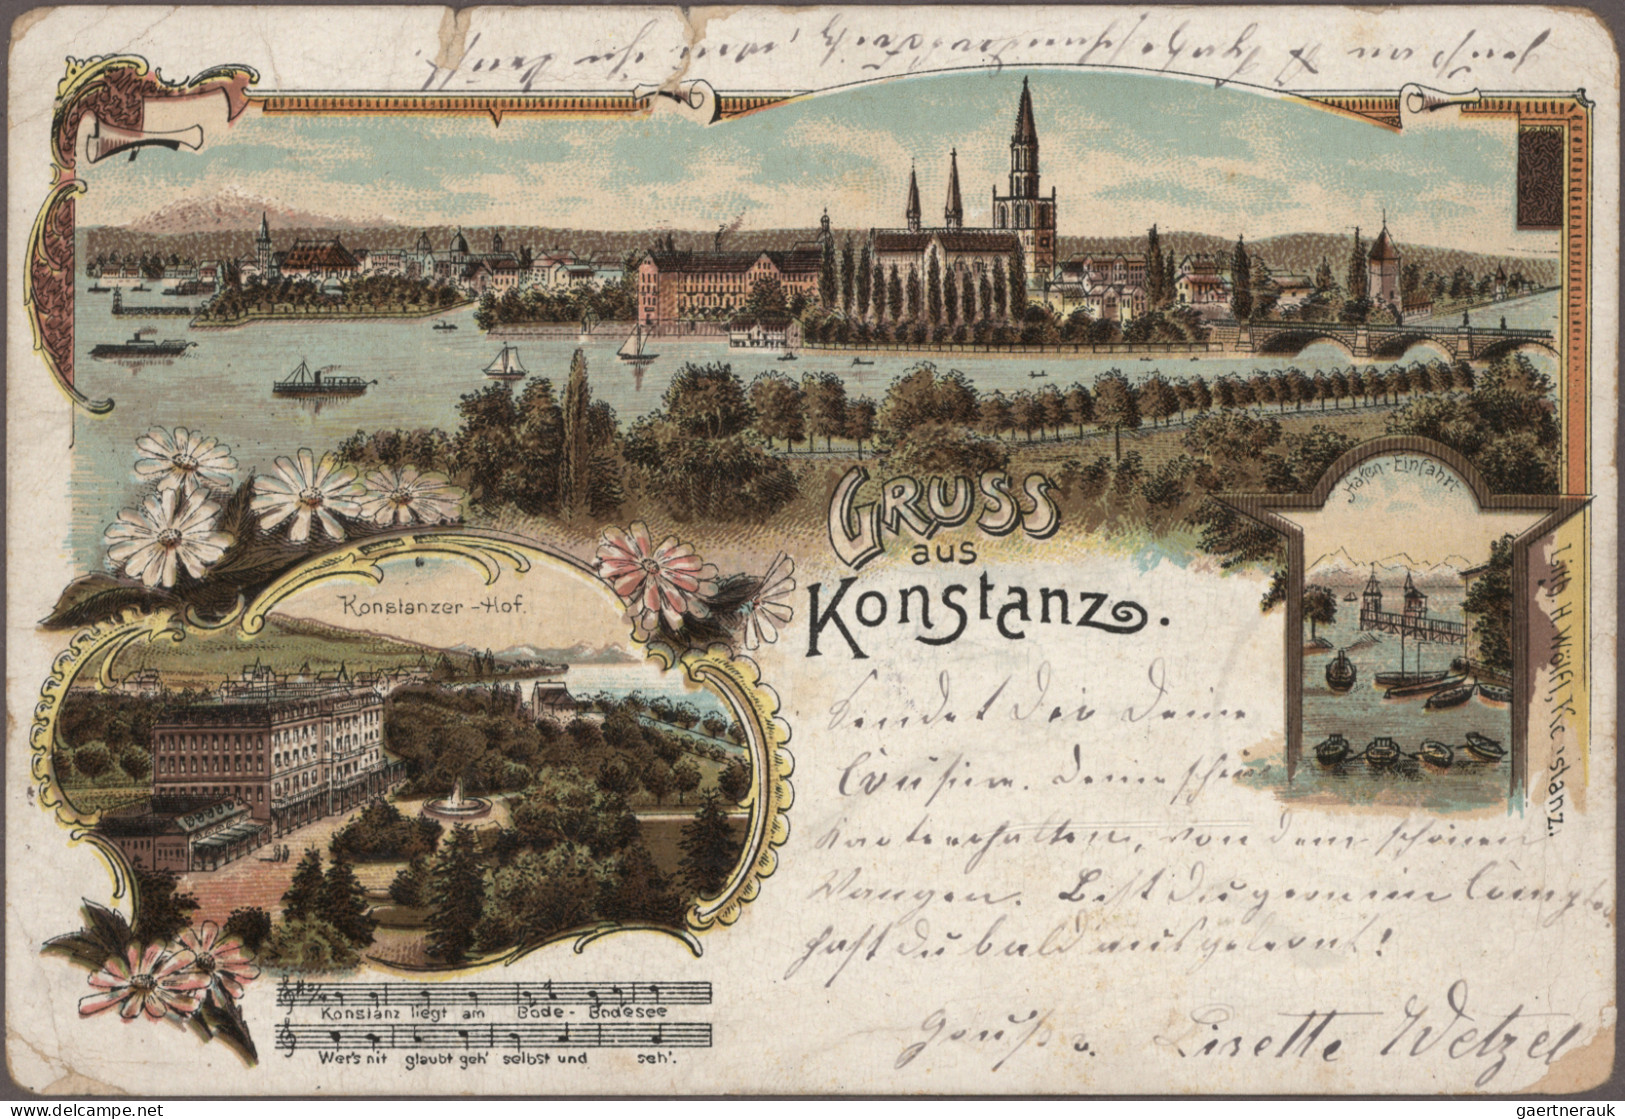 Ansichtskarten: Baden-Württemberg: BODENSEE, Schachtel mit ca. 86 alten Ansichts